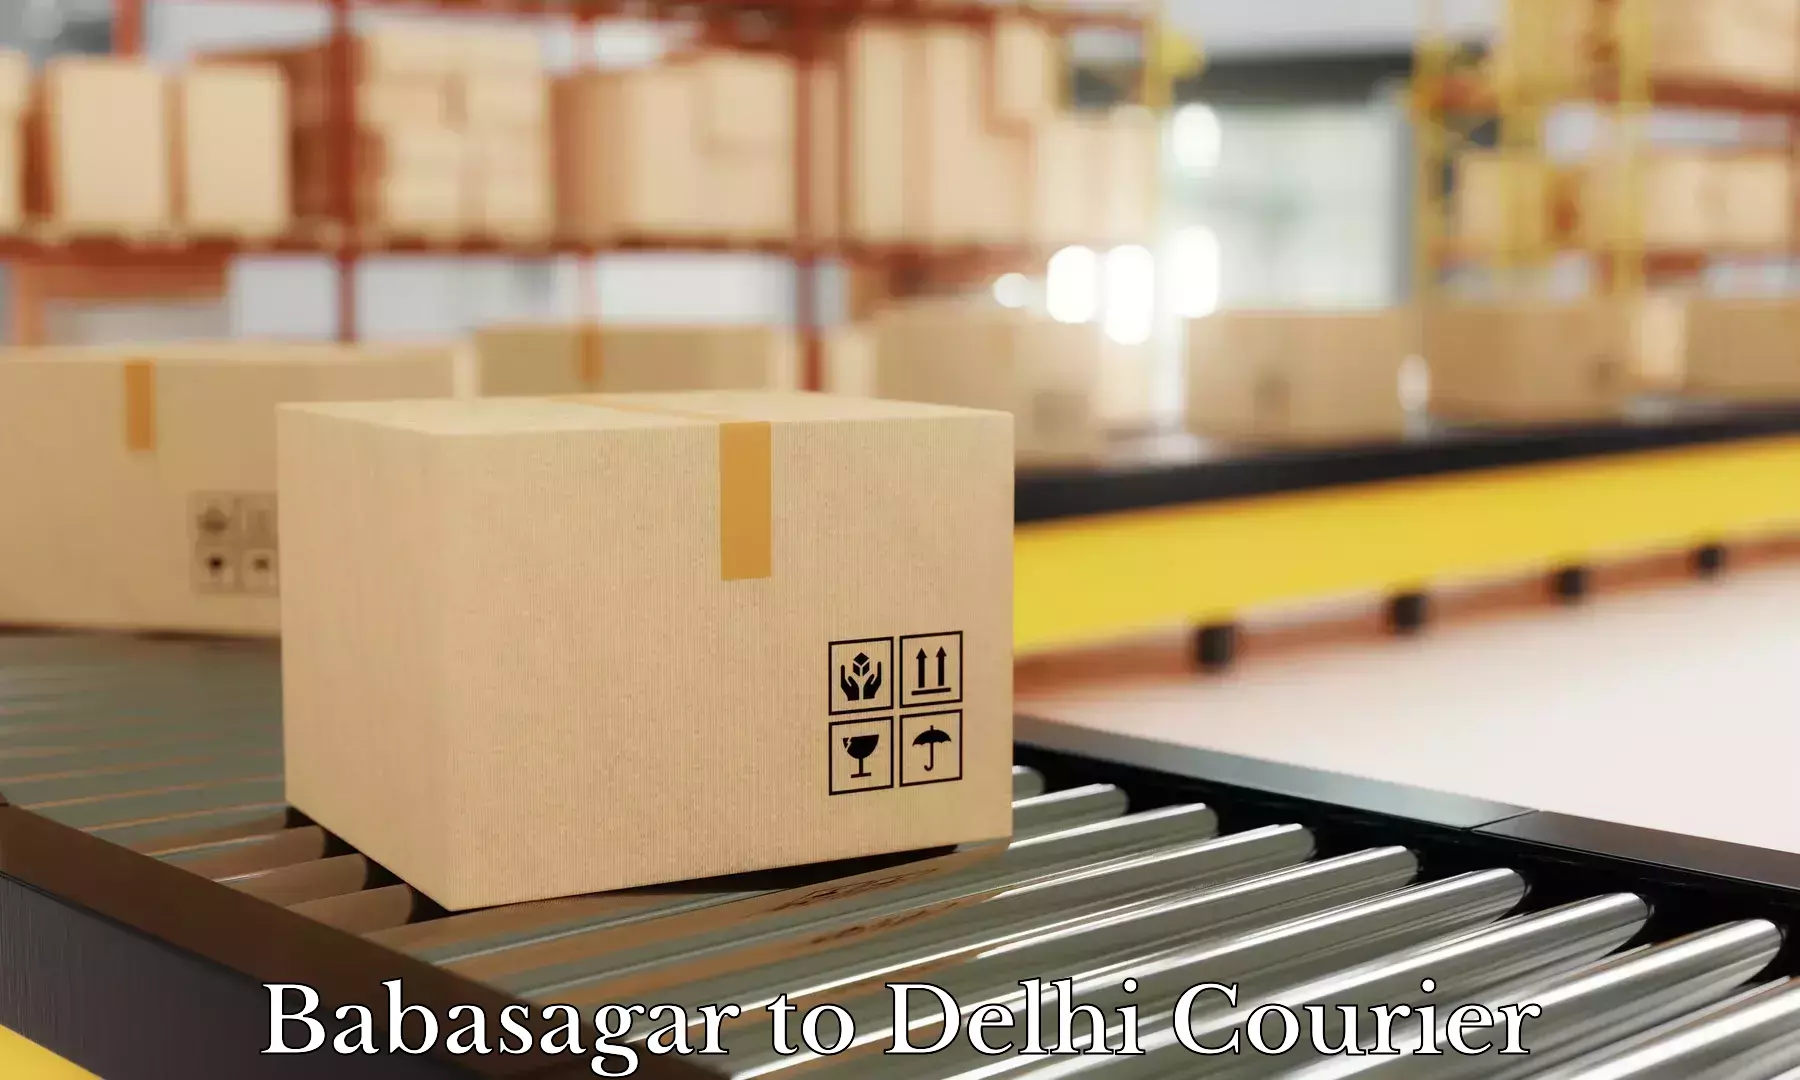 Luggage shipment strategy in Babasagar to Sarojini Nagar